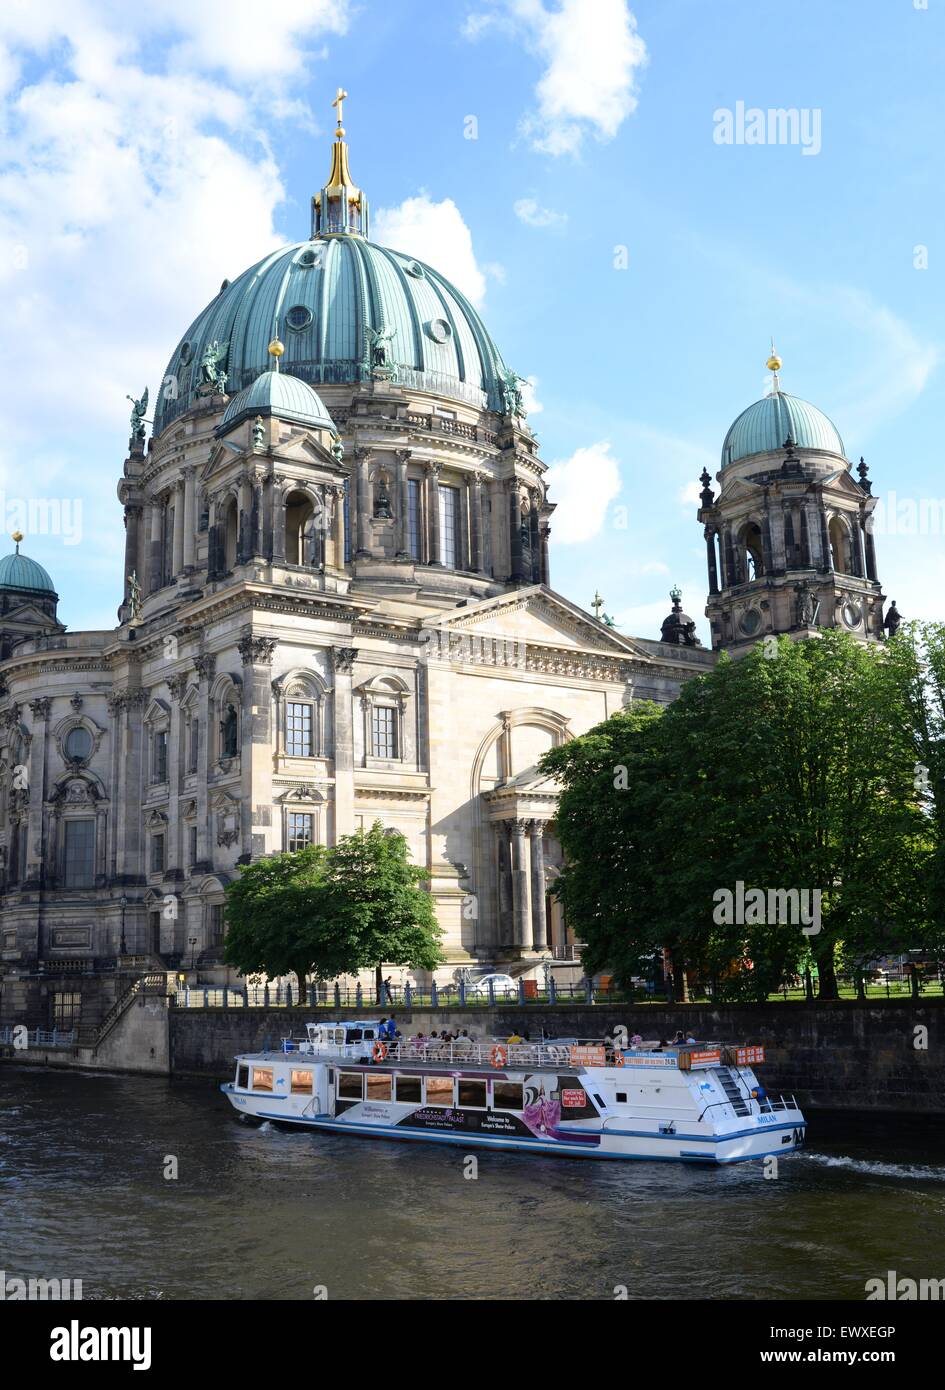 Touristes sur un bateau de plaisance sur la Spree passant par la cathédrale de Berlin, Allemagne Banque D'Images